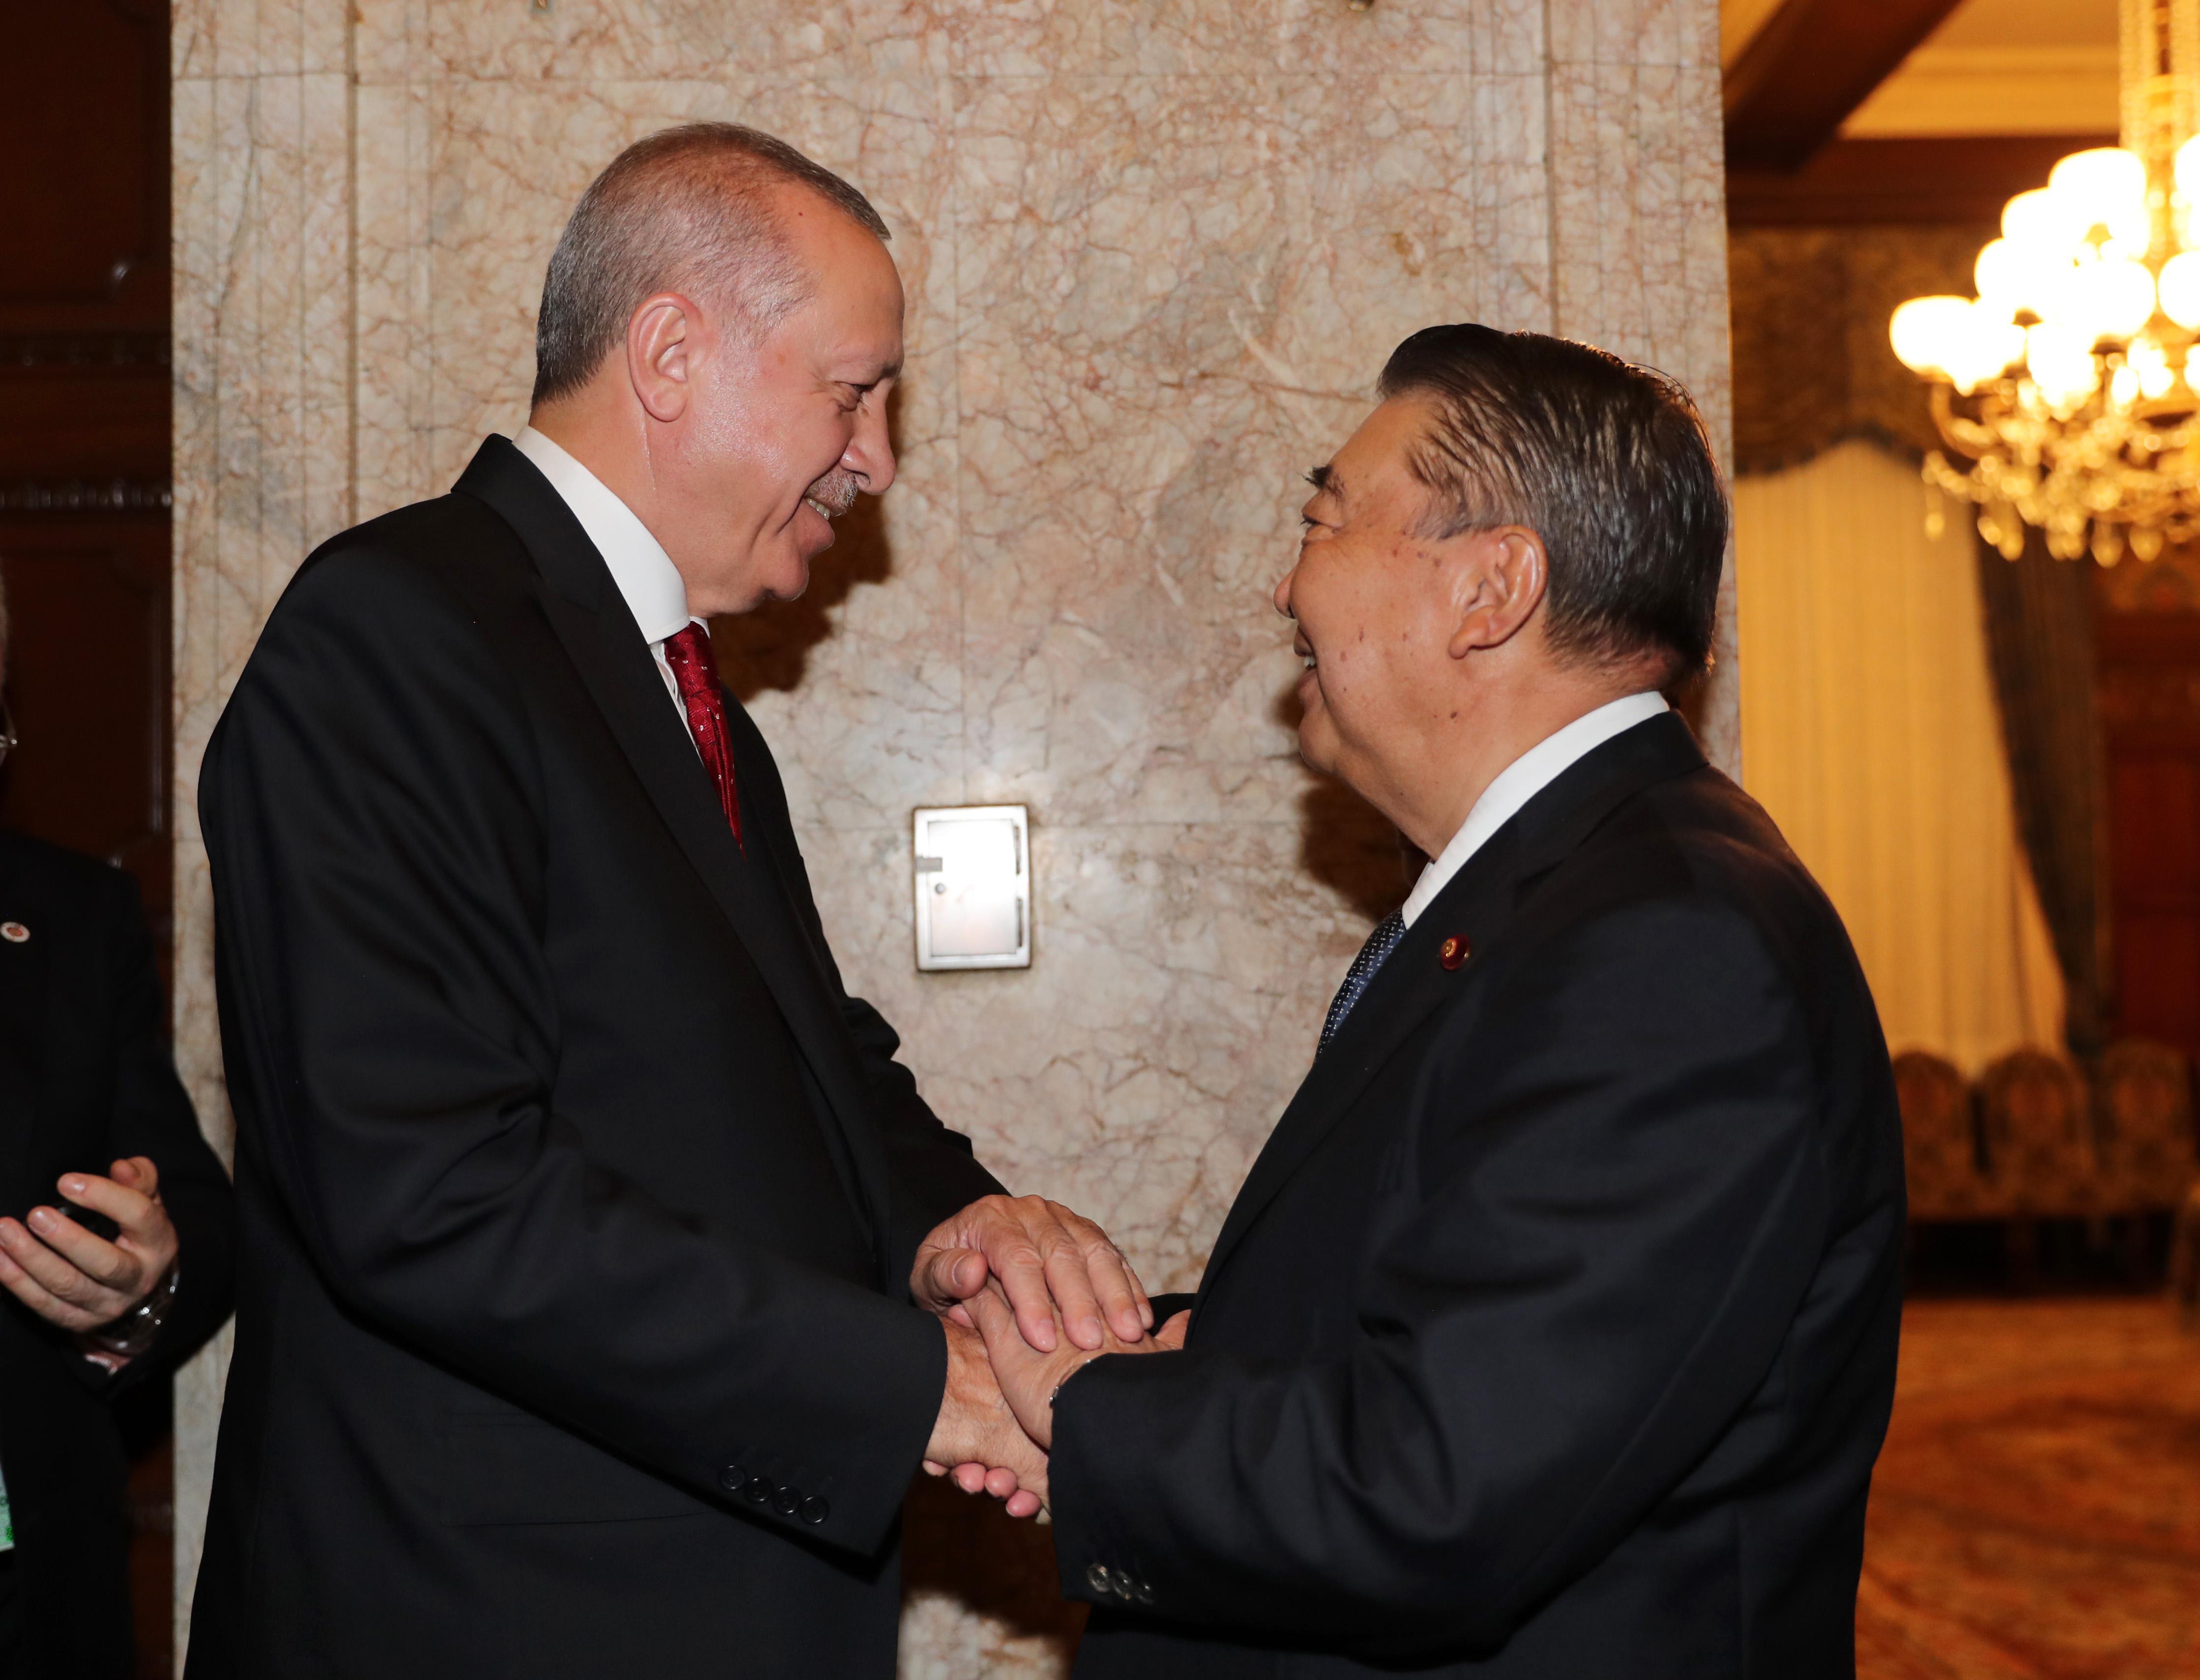 Cumhurbaşkanı Erdoğandan Japonyada önemli görüşmeler